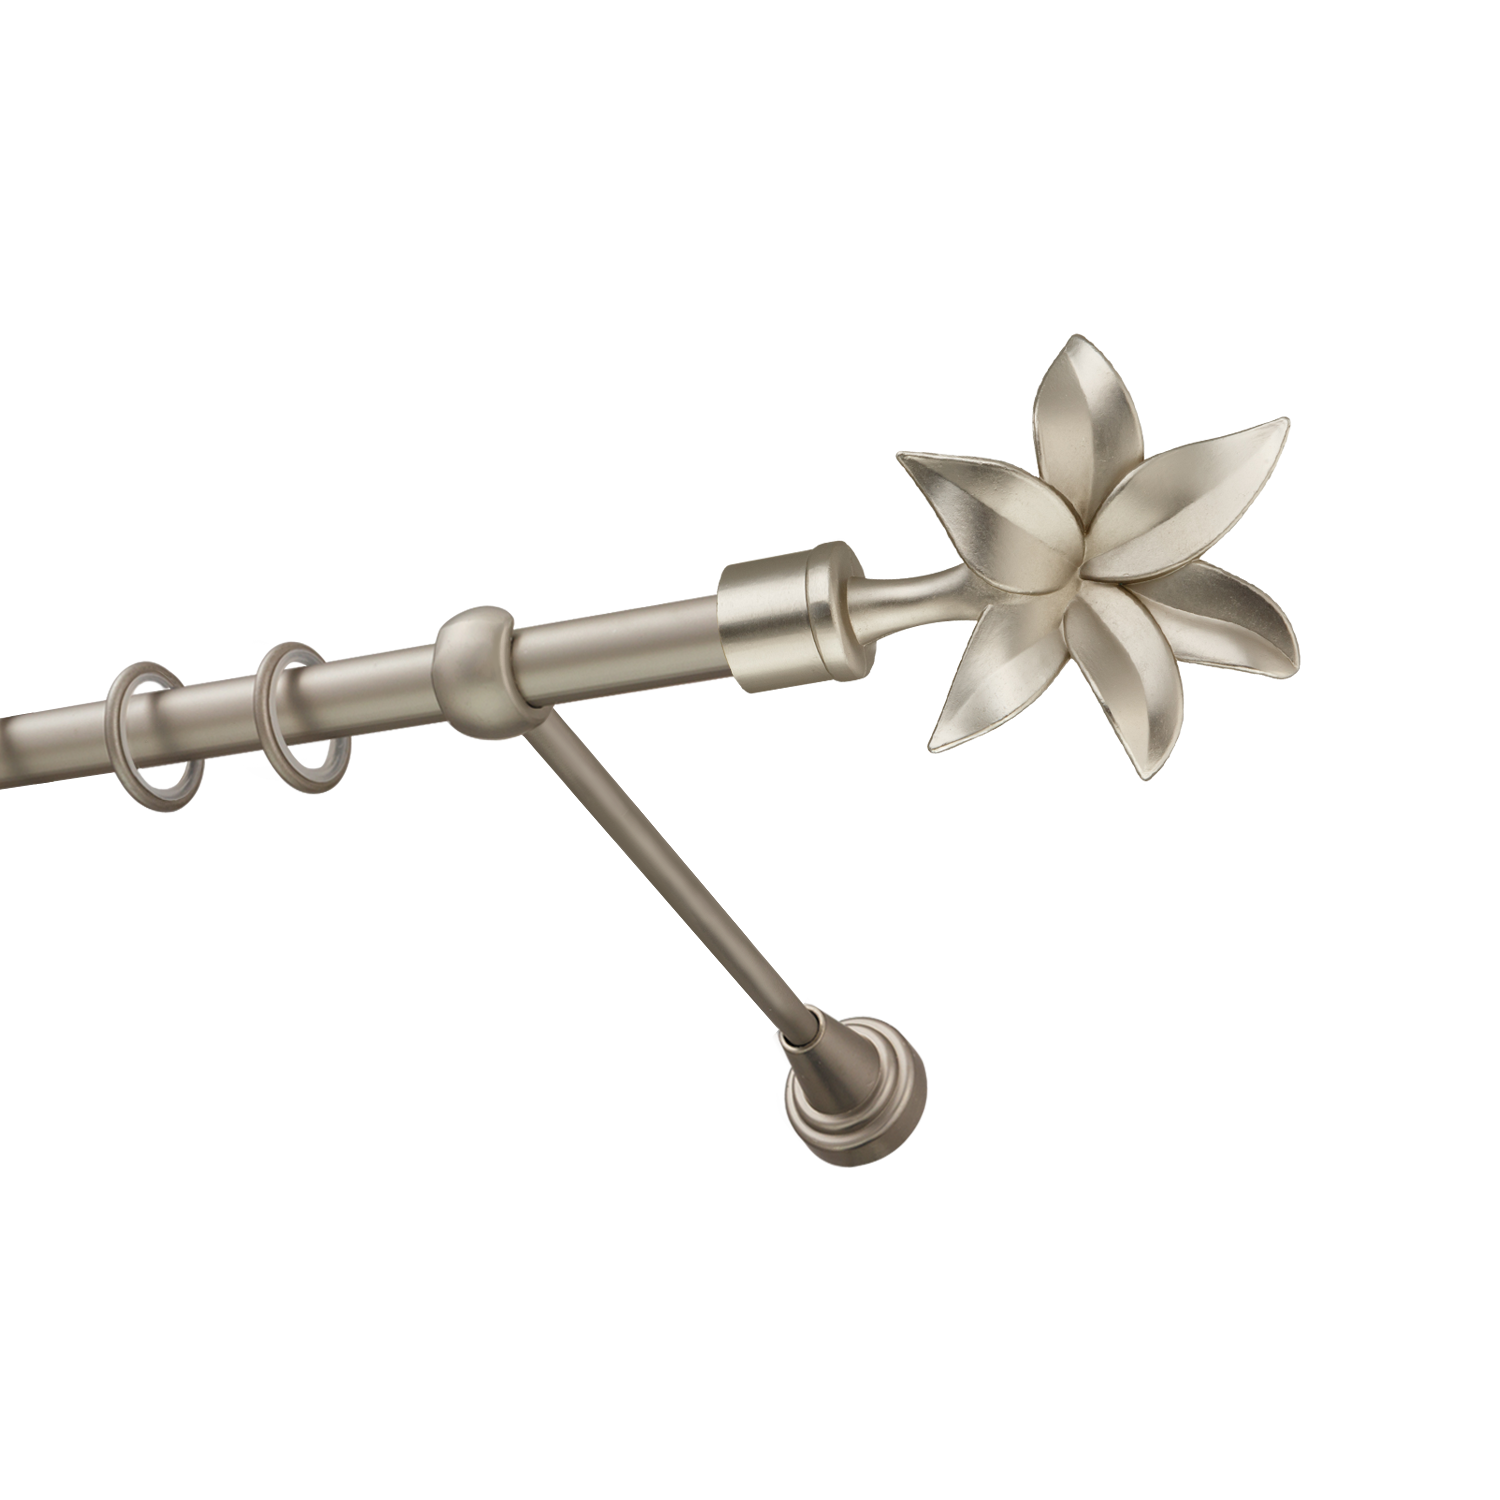 Металлический карниз для штор Магнолия, однорядный 16 мм, сталь, гладкая штанга, длина 180 см - фото Wikidecor.ru